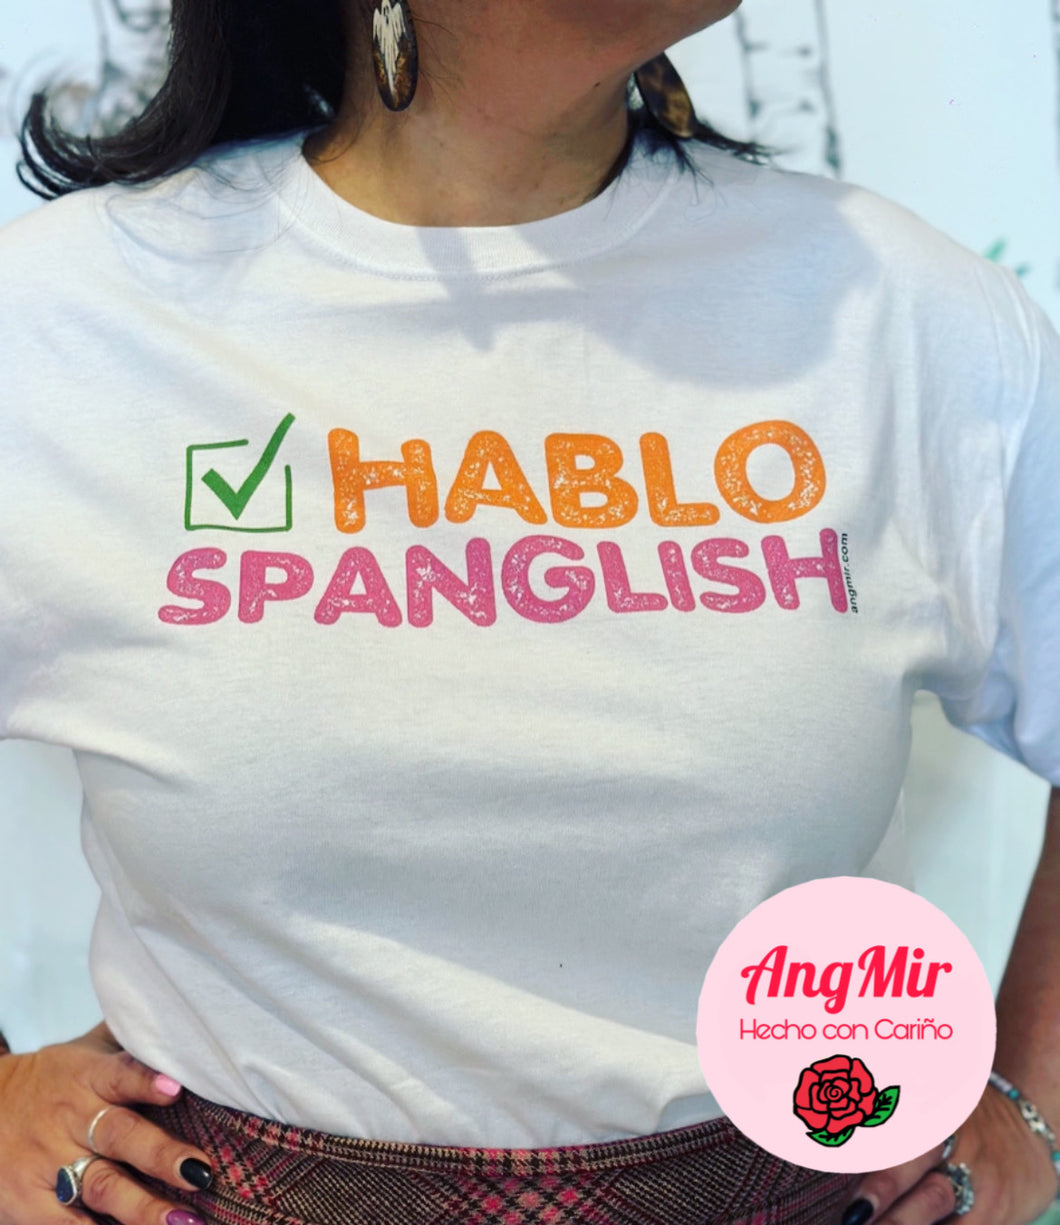 Hablo Spanglish TShirt